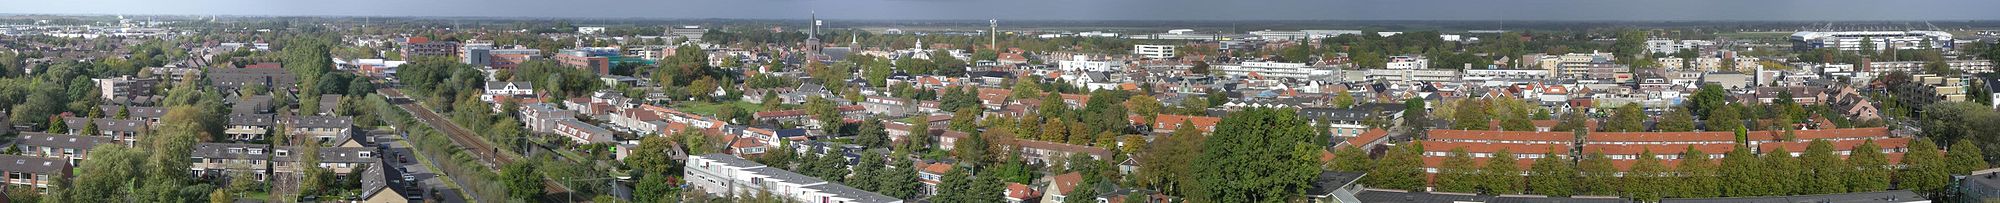 Heerenveen panorama 01.jpg